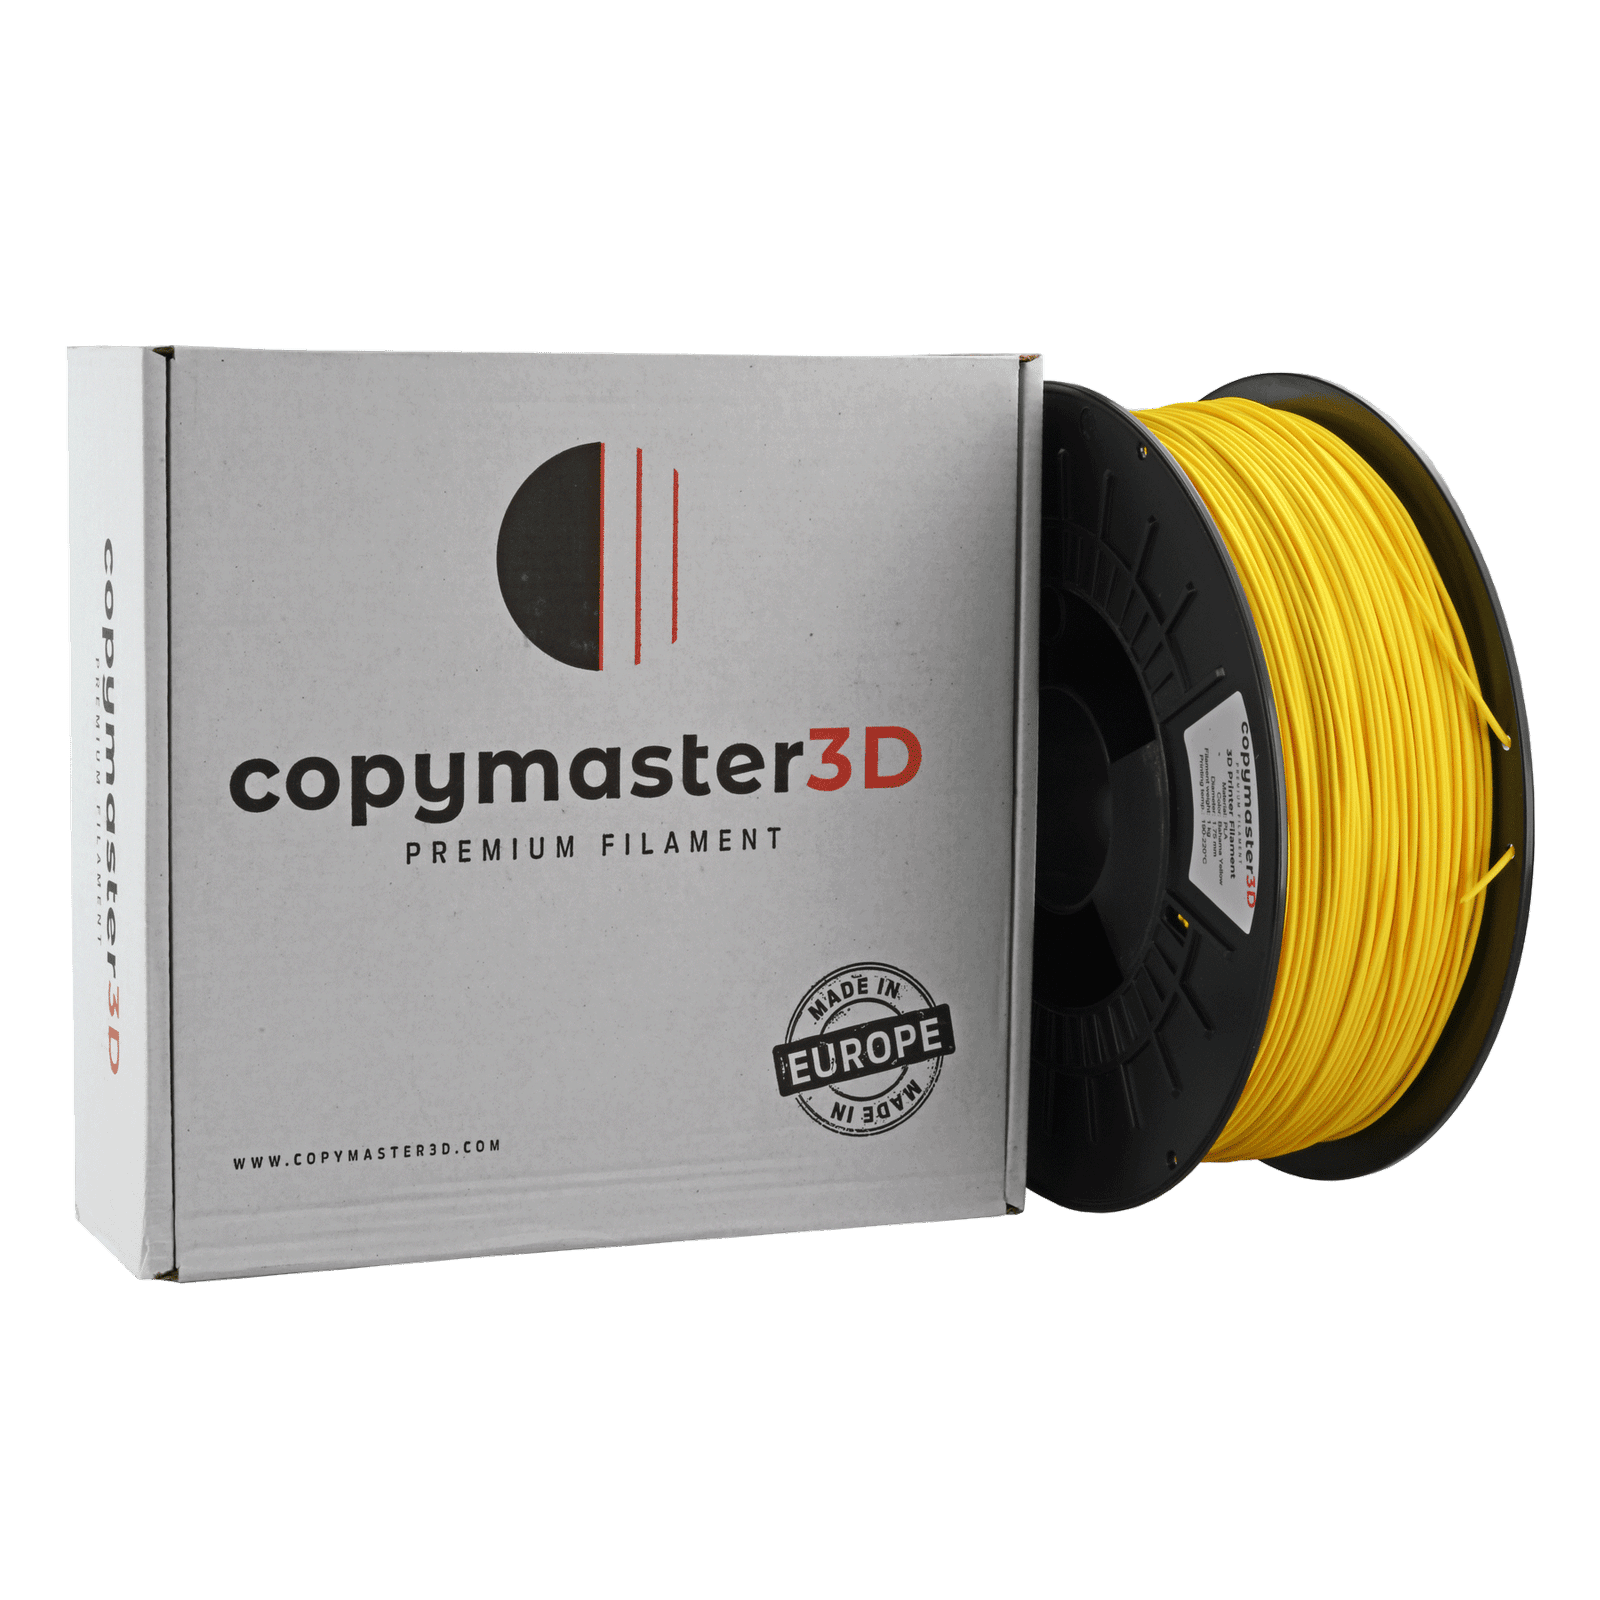 Copymaster3D Premium PLA Filament 1.75mm 1KG Bahama Yellow